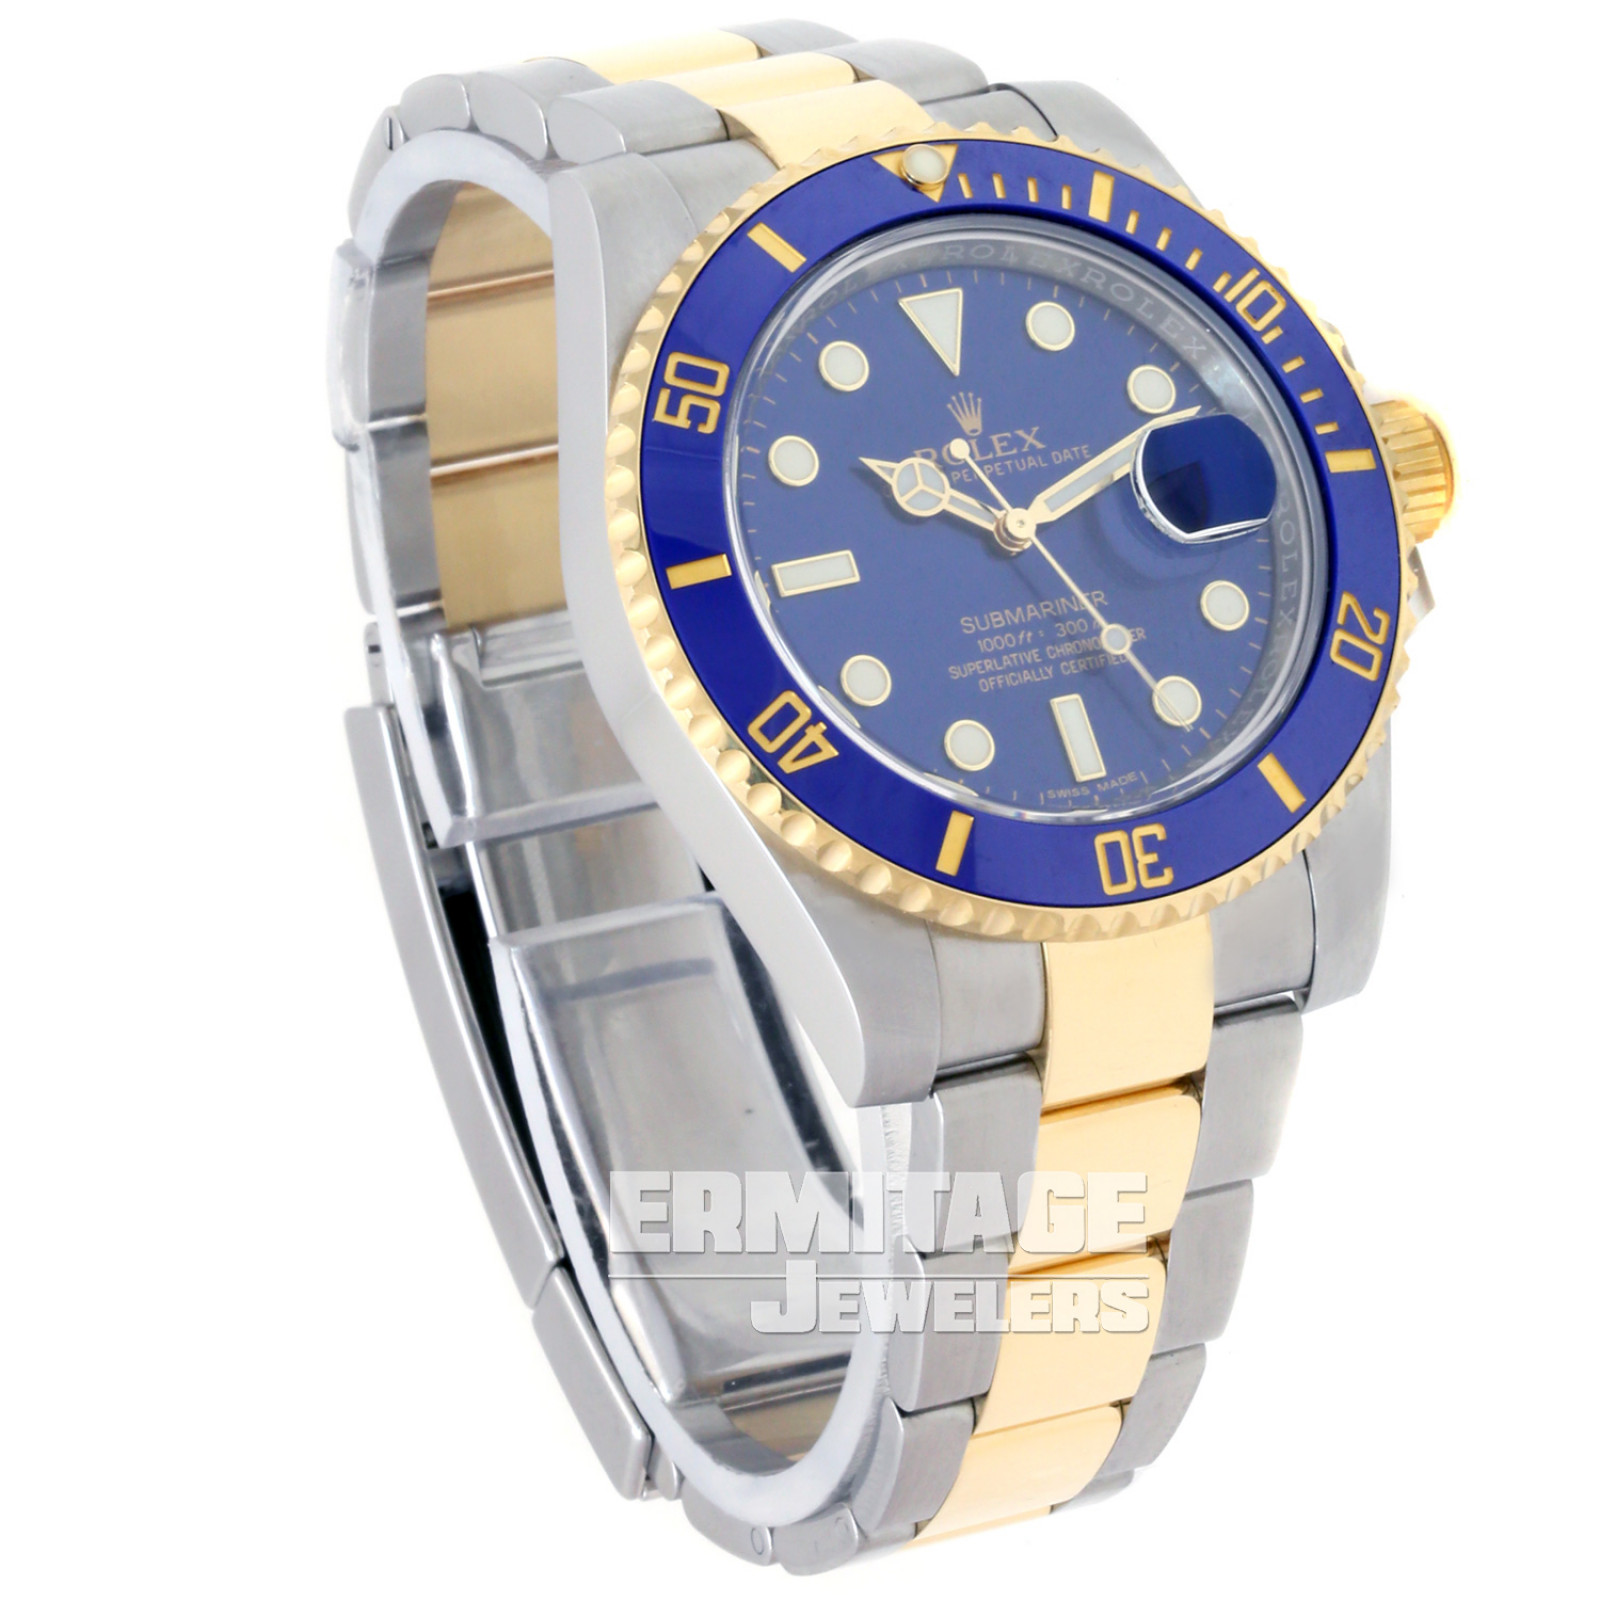 Rolex Submariner 116613 Blue Gold & Steel